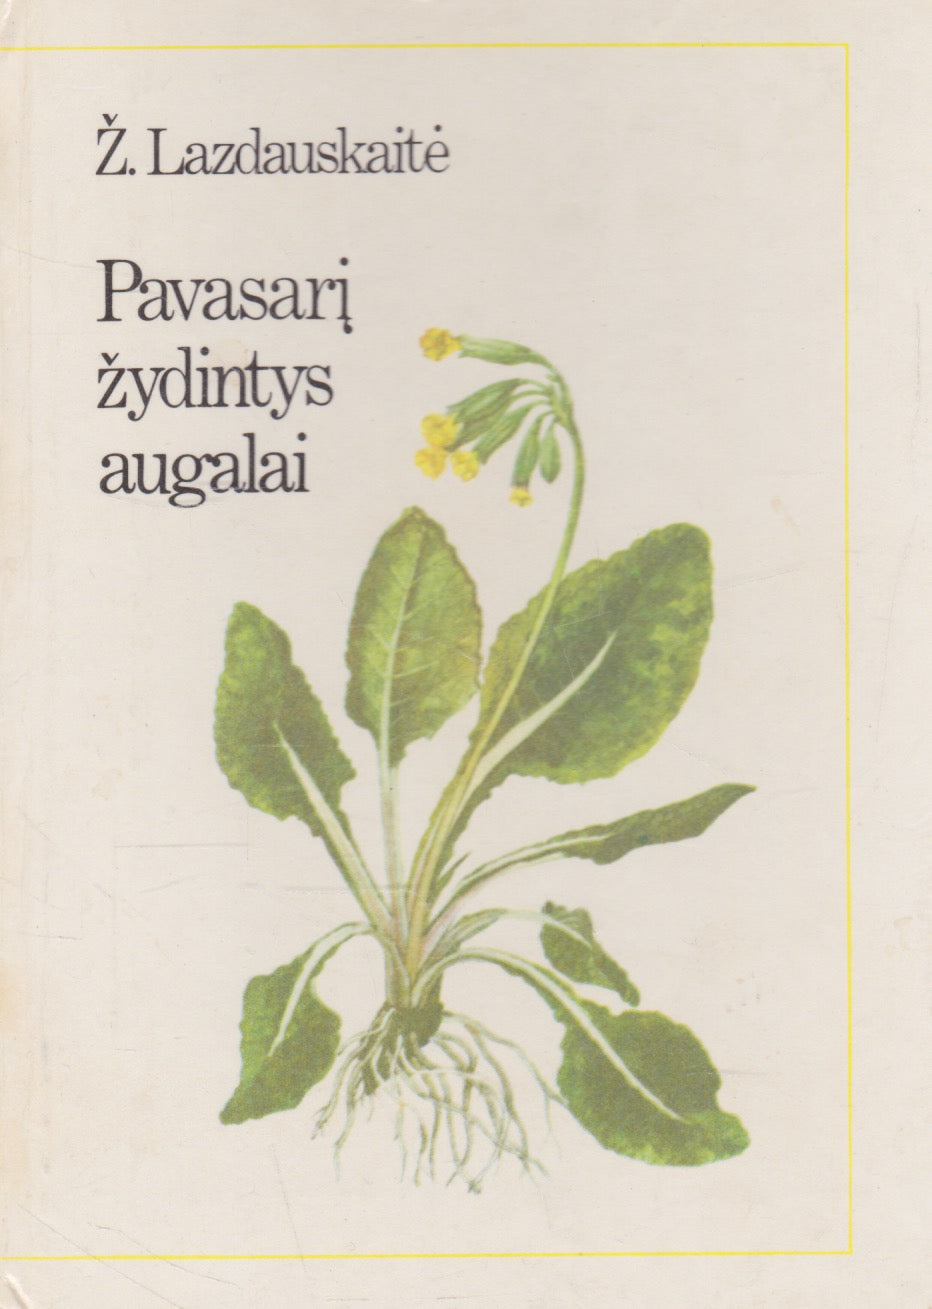 R. Jankevičienė, Ž. Lazdauskaitė - Žydintys augalai (keli variantai)